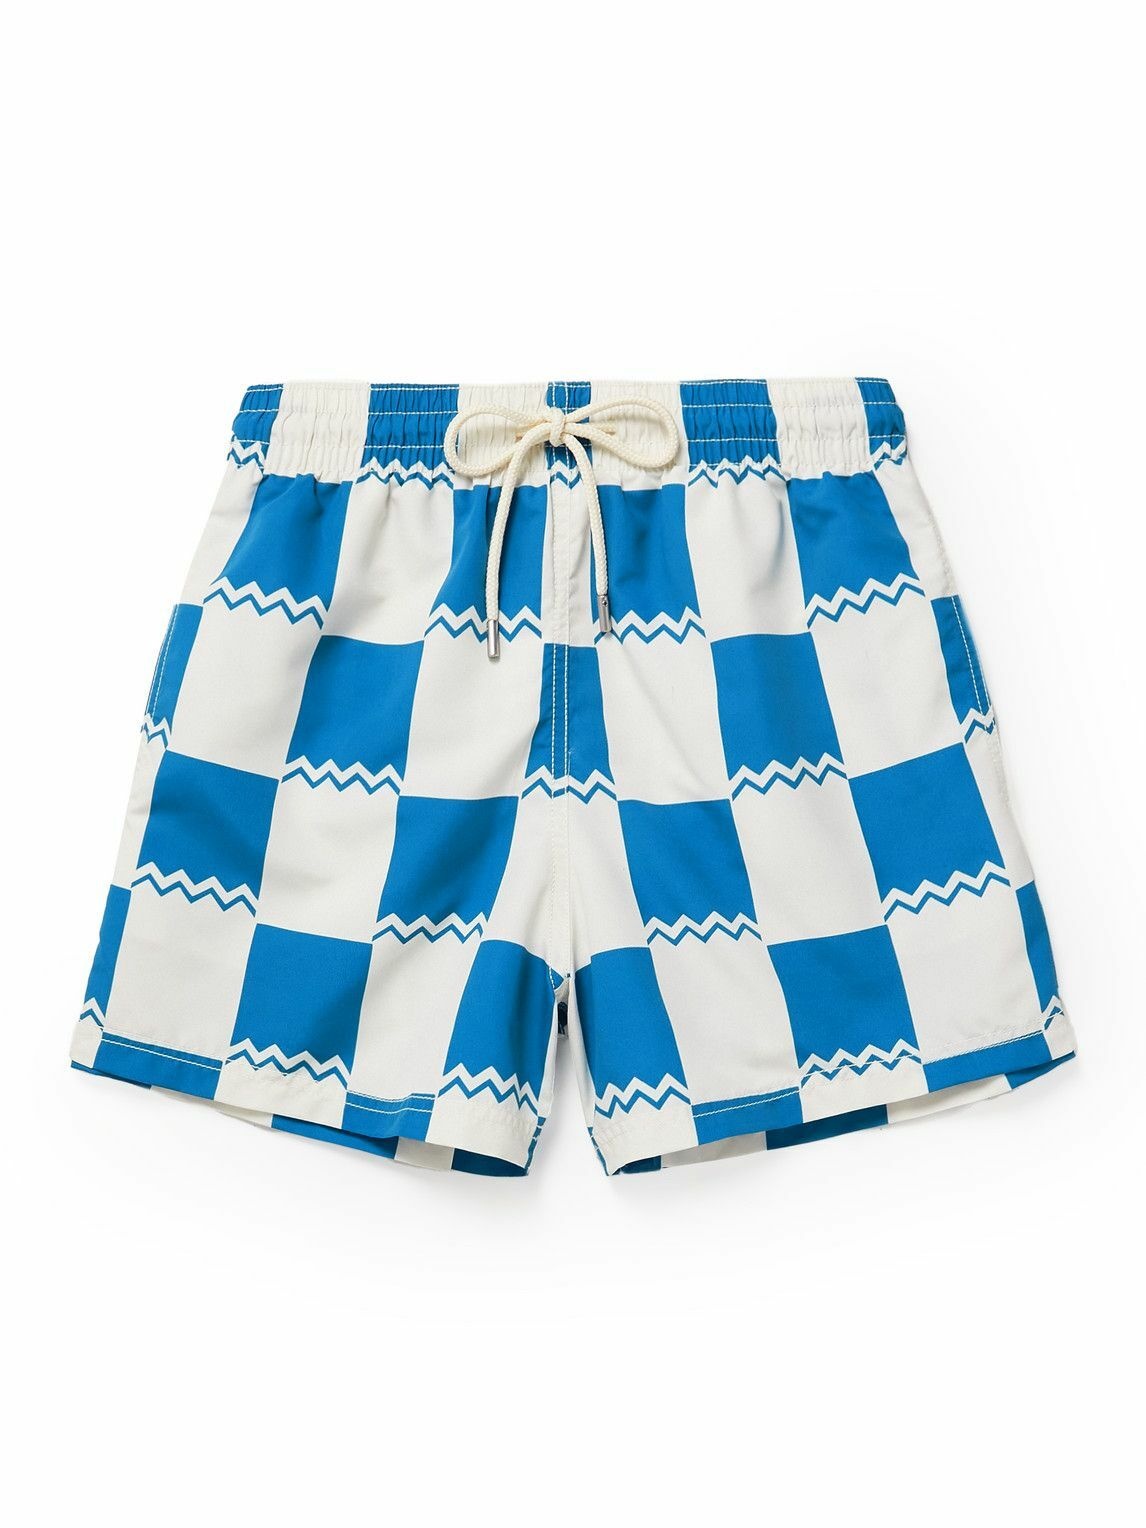 Photo: Atalaye - Otzea Mid-Length Printed Recycled Swim Shorts - Blue